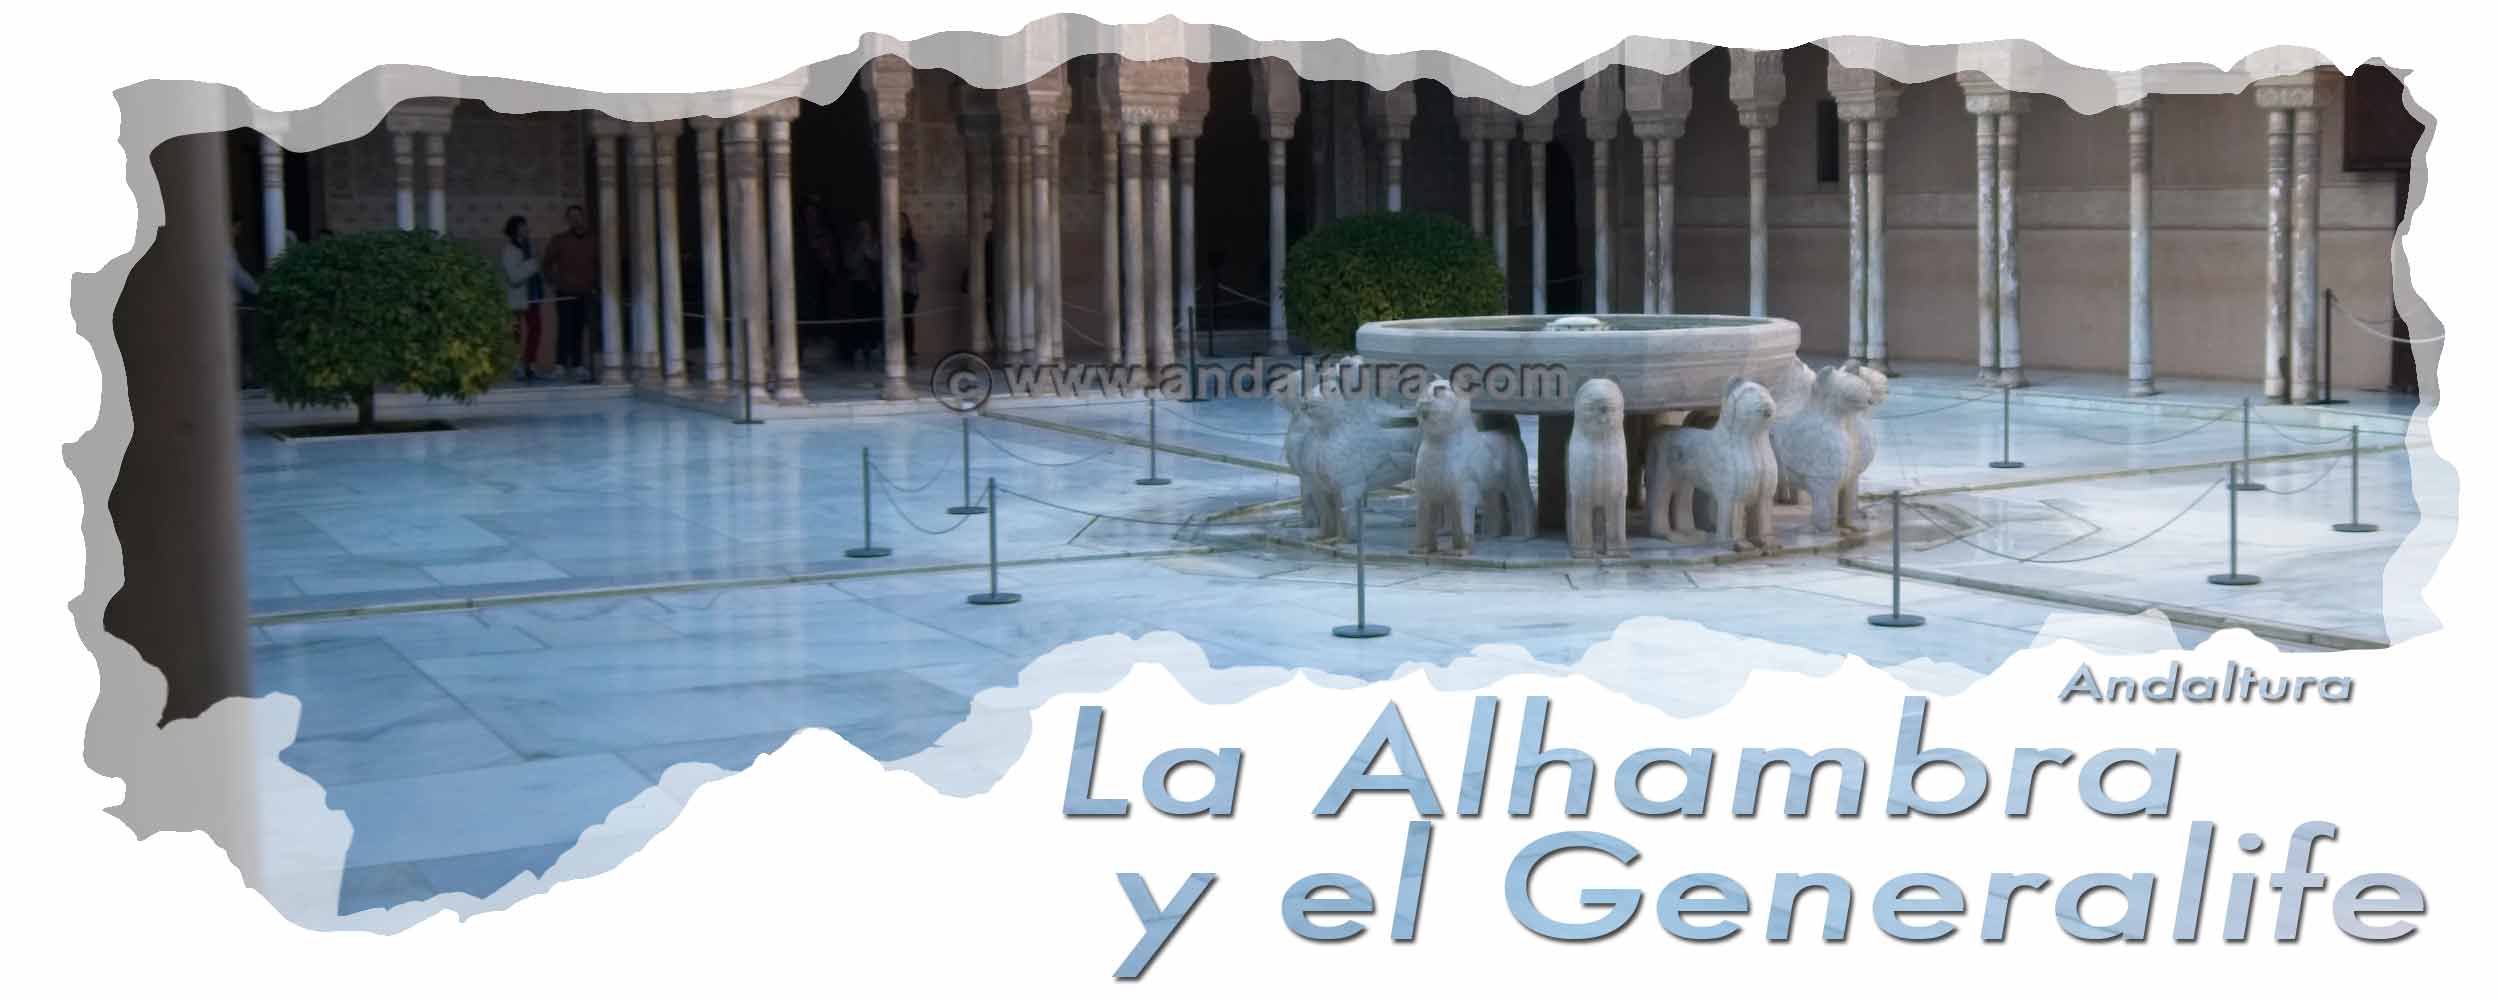 Cabecera Normas para la visita de la Alhambra y el Generalife - Fuente de los Leones